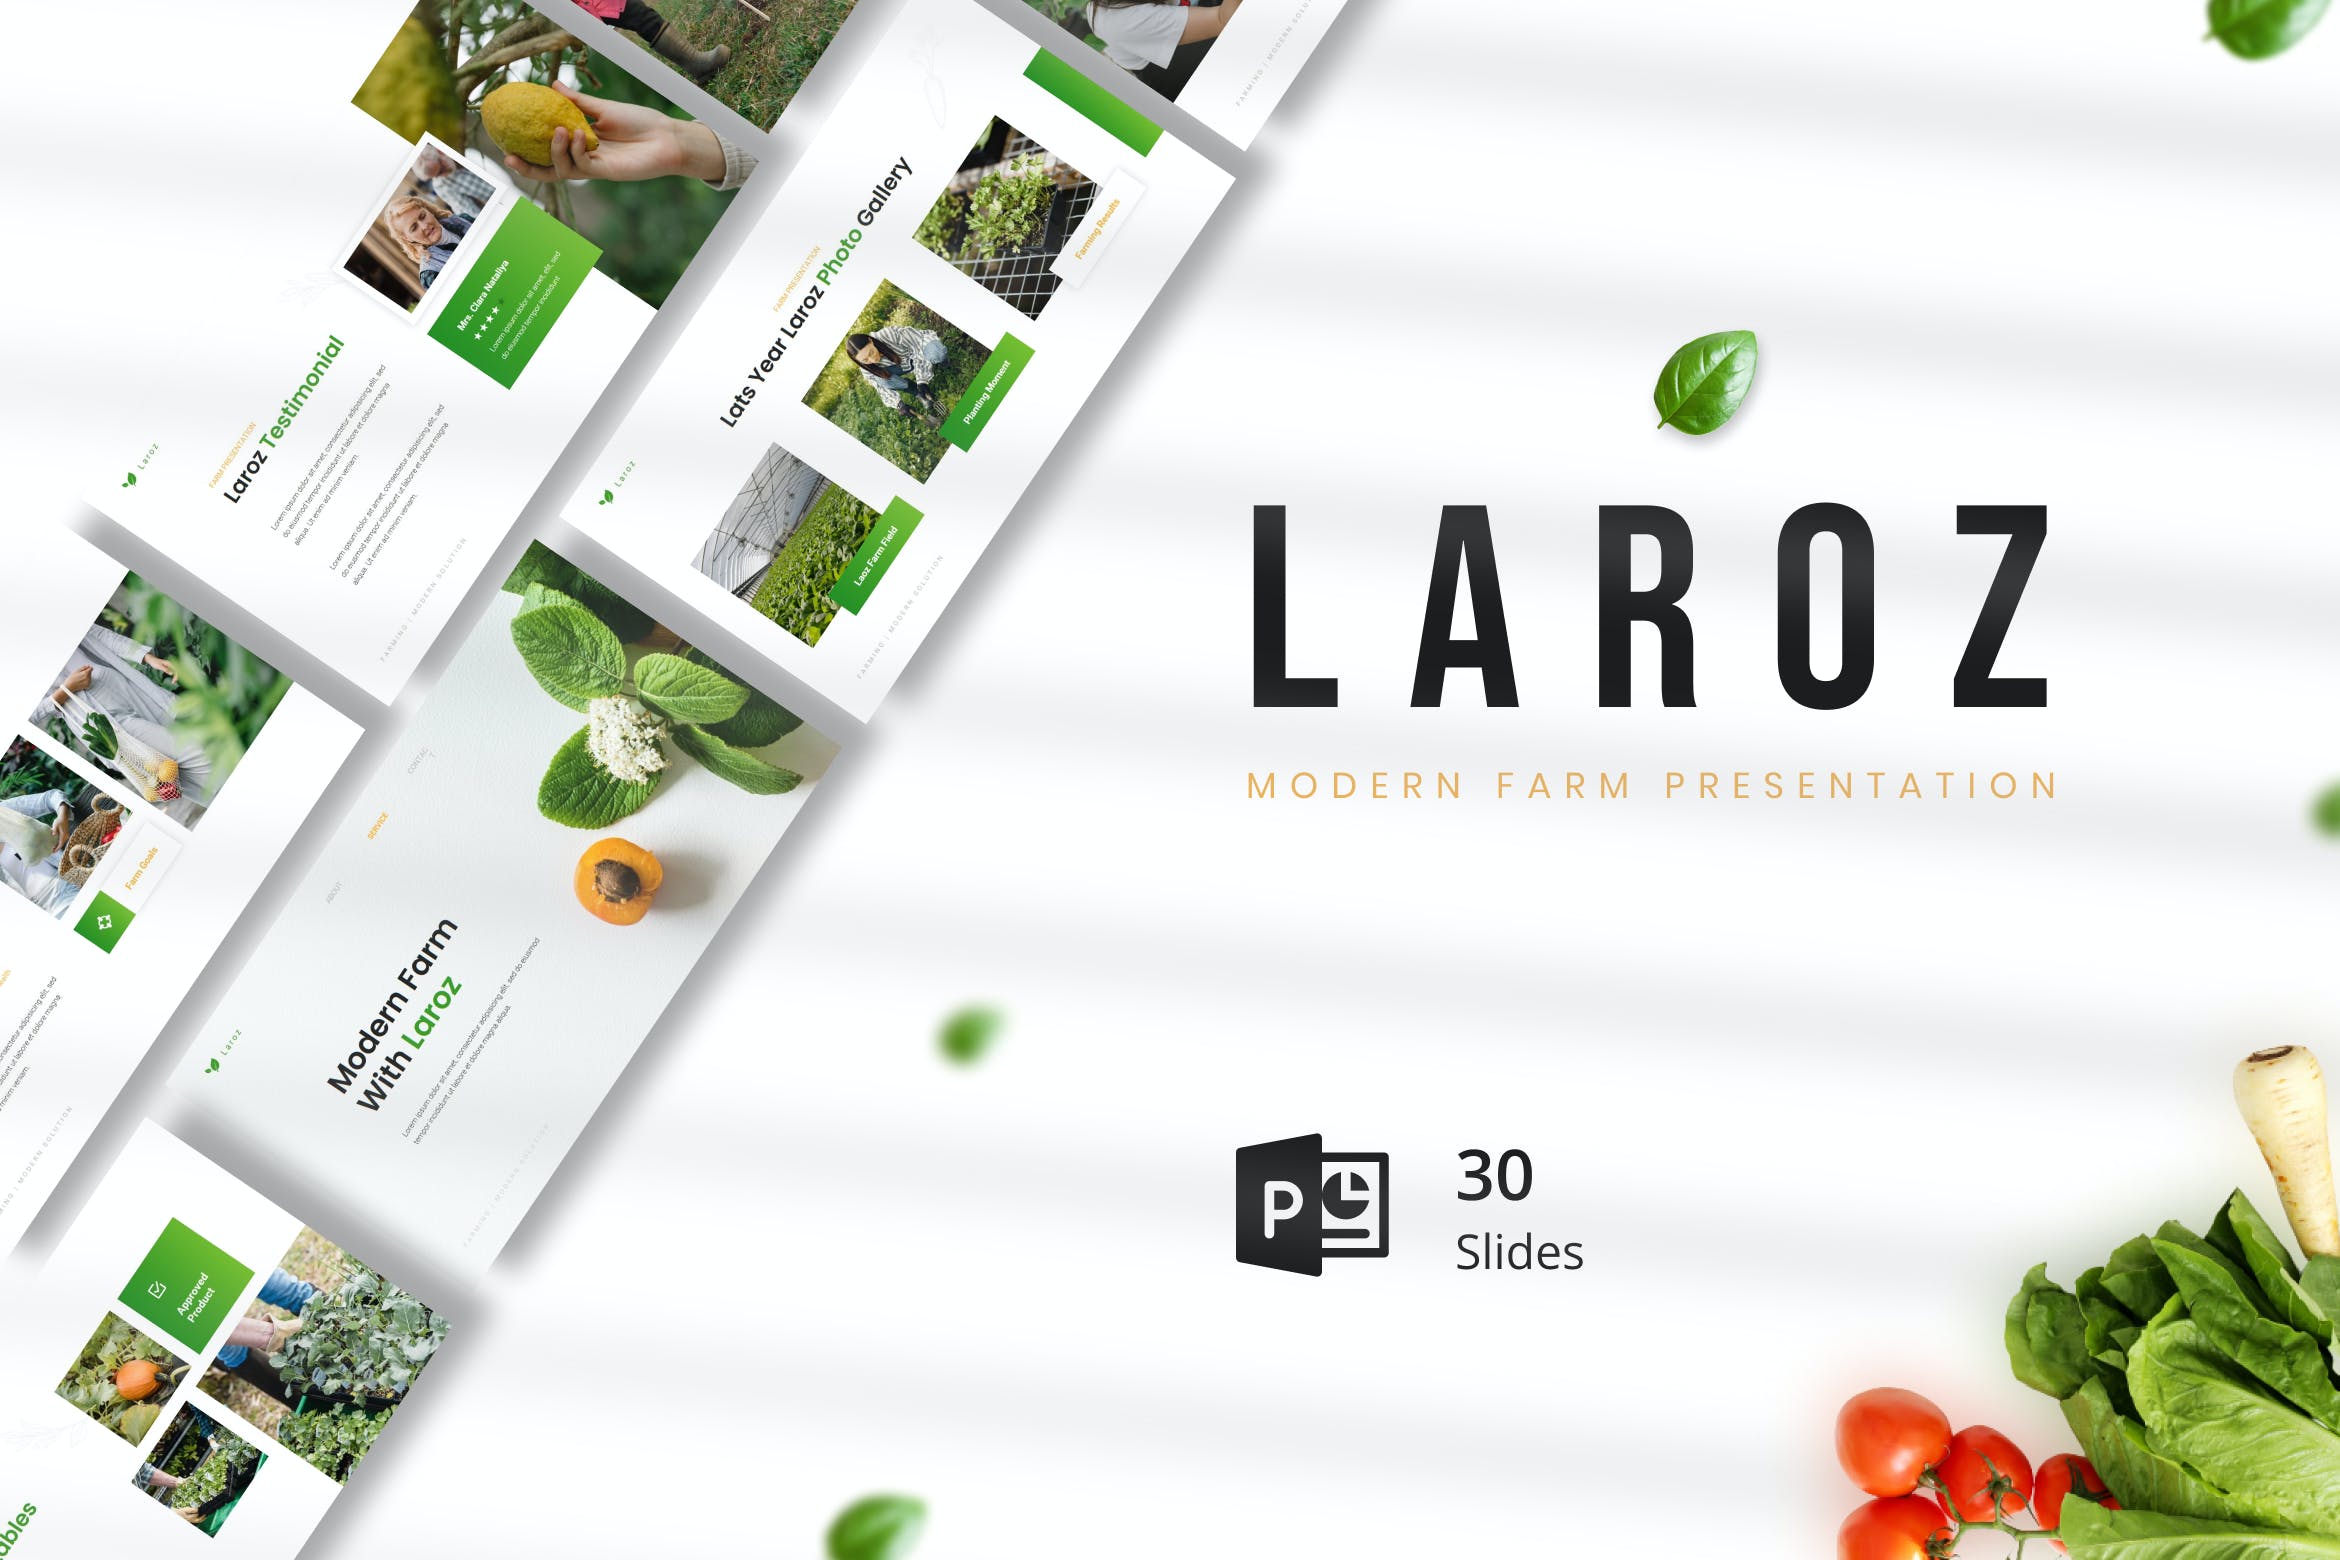 现代农场农产品PPT幻灯片模板 Laroz – Modern Farm Presentation PowerPoint 幻灯图表 第1张